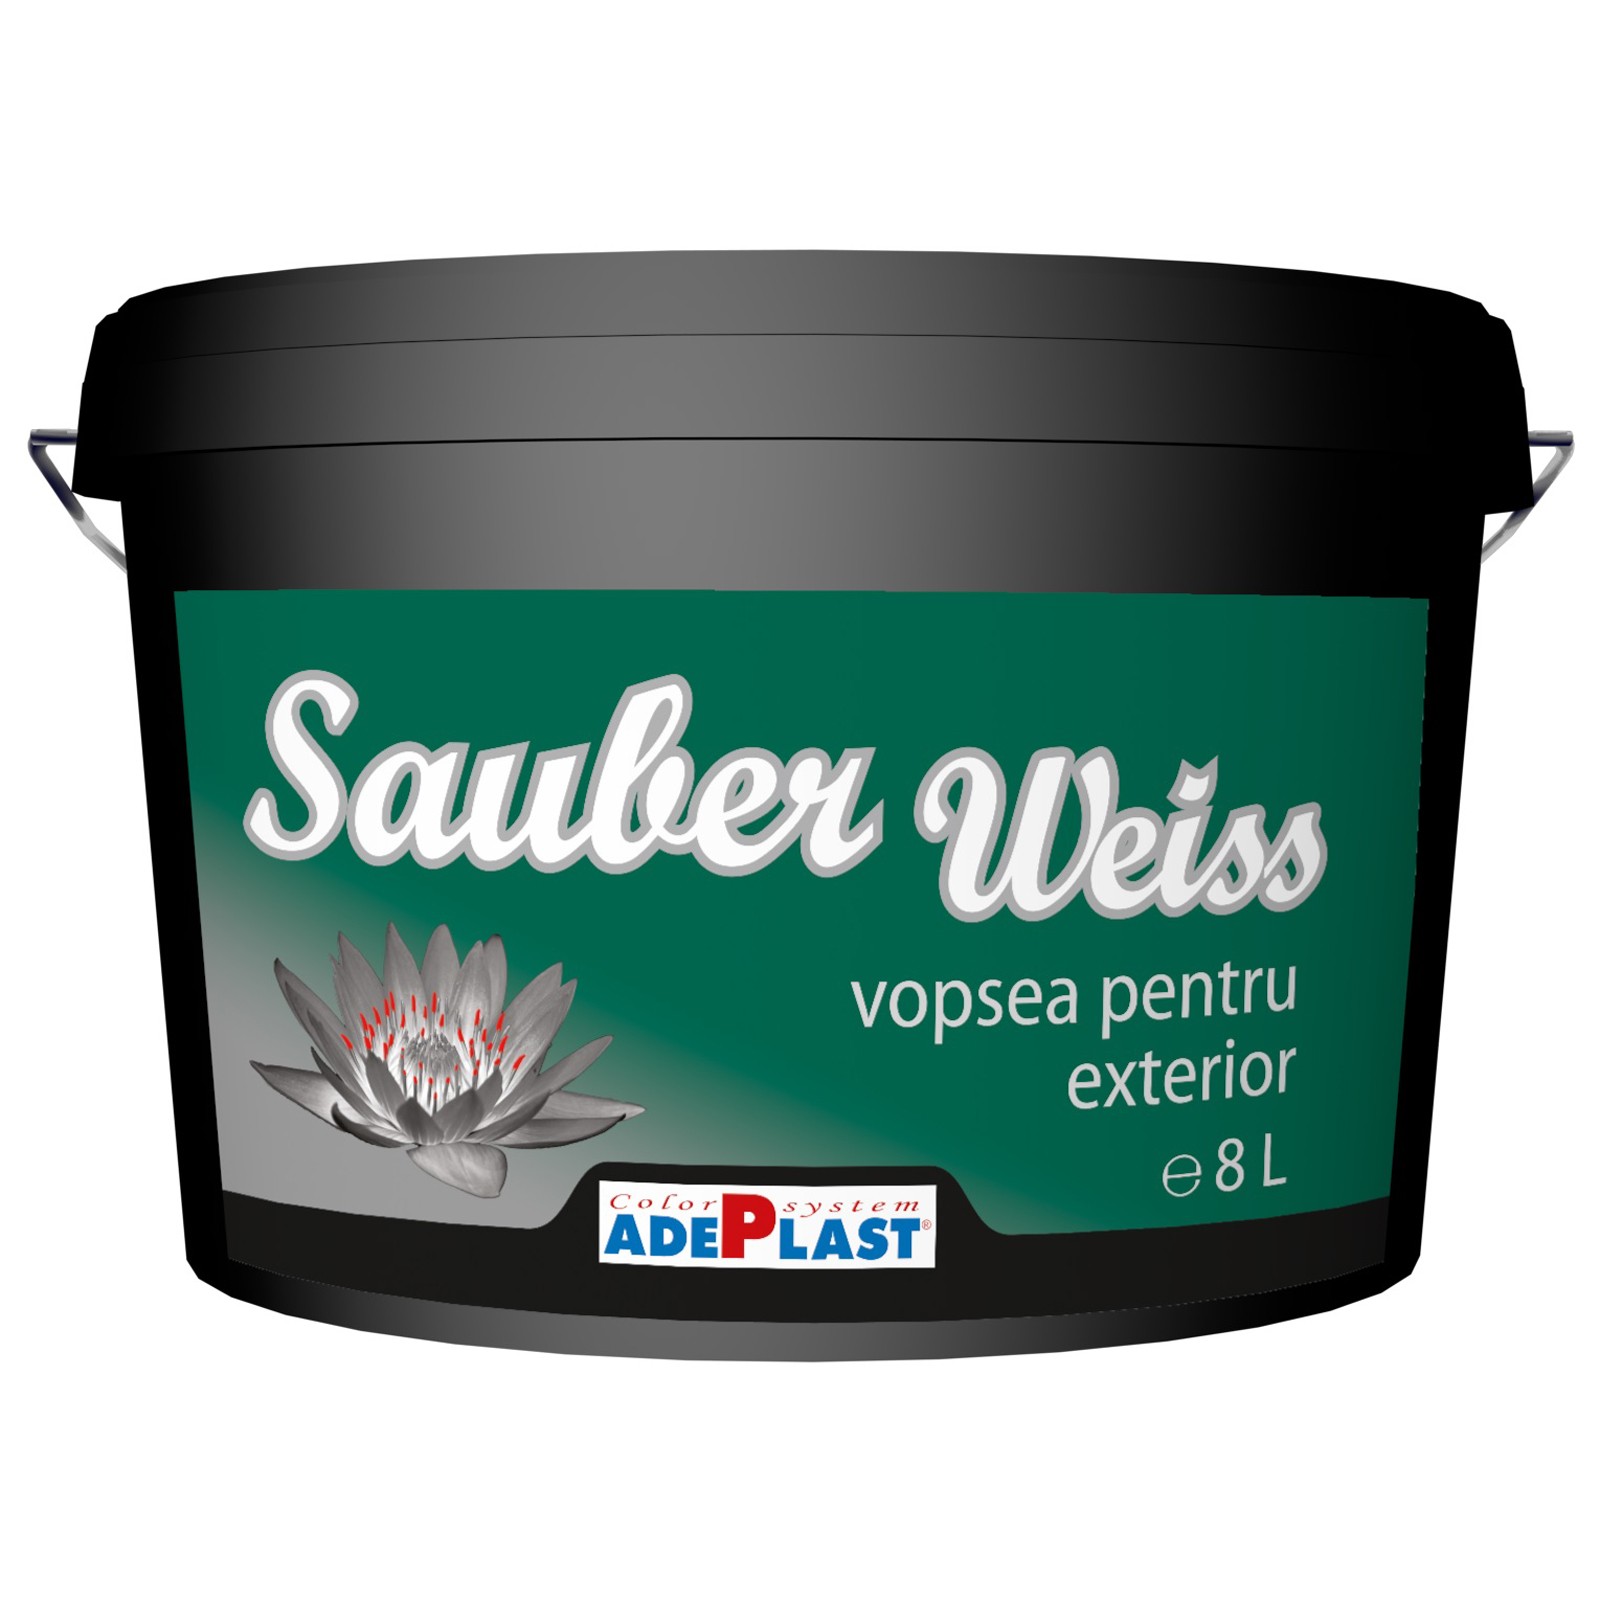 Vopseluri - Vopsea lavabila pentru exterior Adeplast Sauber Weiss alba 15L, https:maxbau.ro